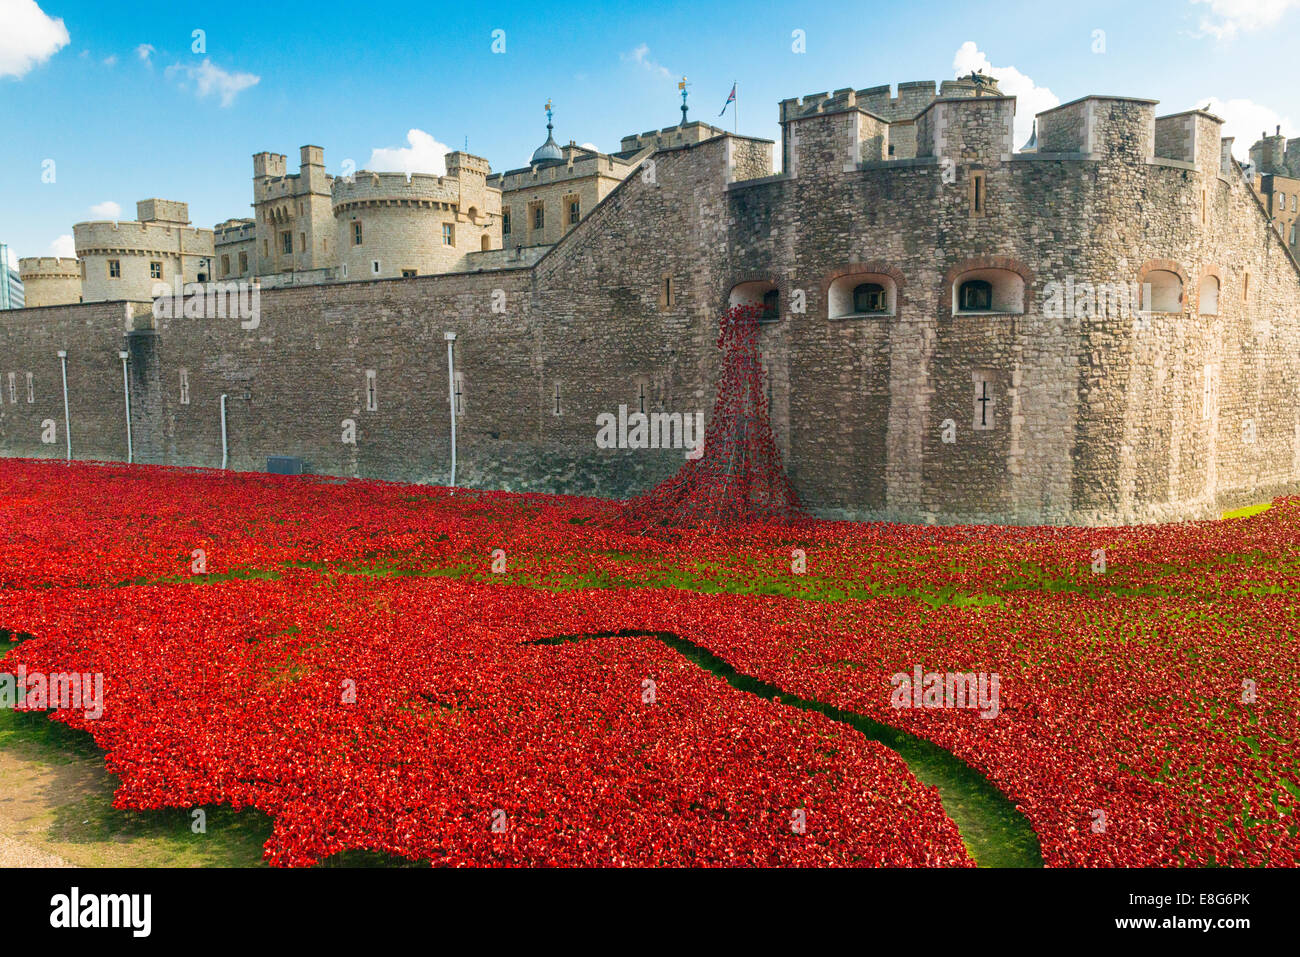 La Torre di Londra ricorda la Prima Guerra Mondiale WW1 WWI - Sangue spazzata di terre e mari di Red artista Paul Cummins designer Tom Piper Foto Stock